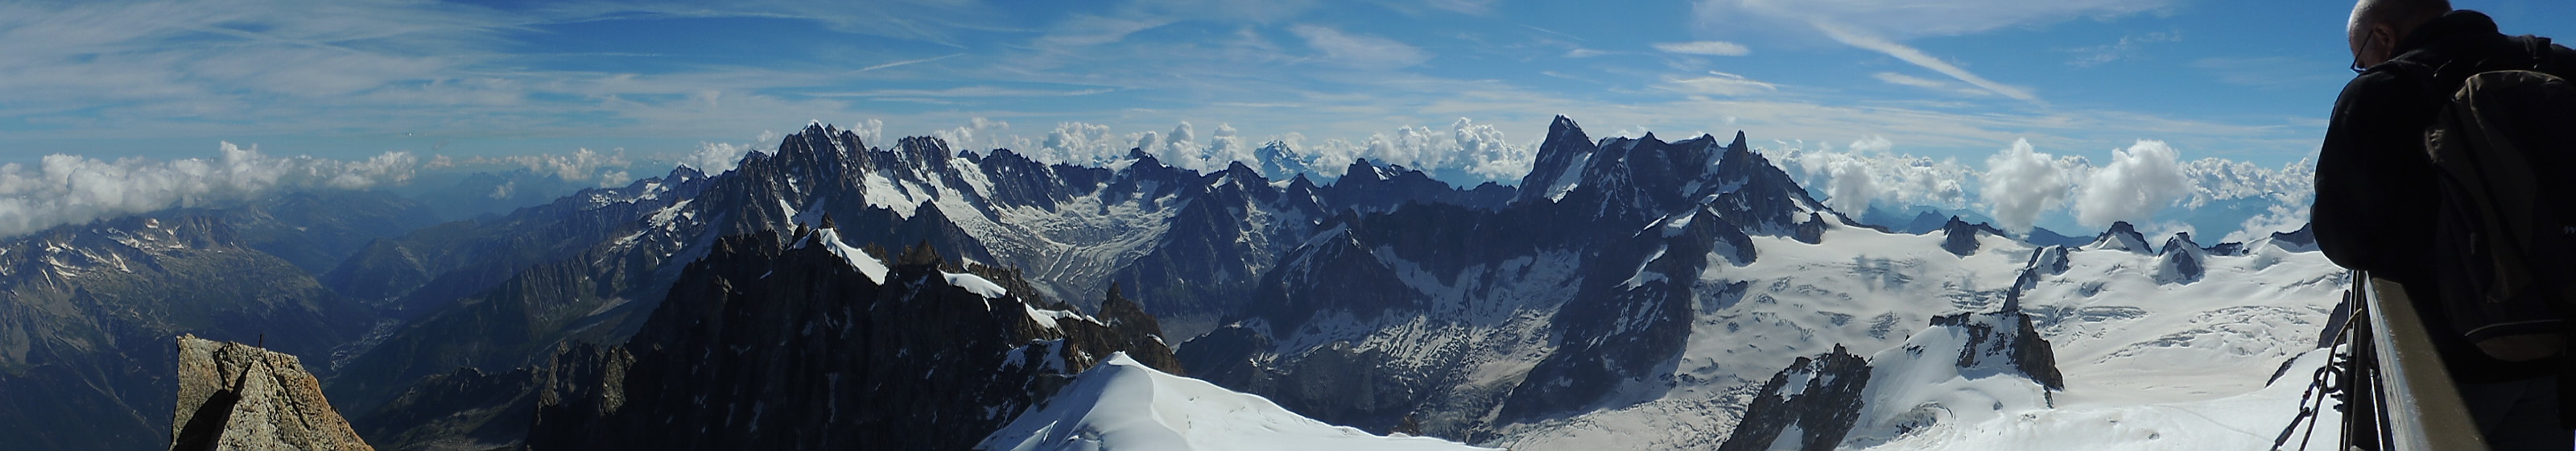 Mont Blanc, The Alps - DSCN3891